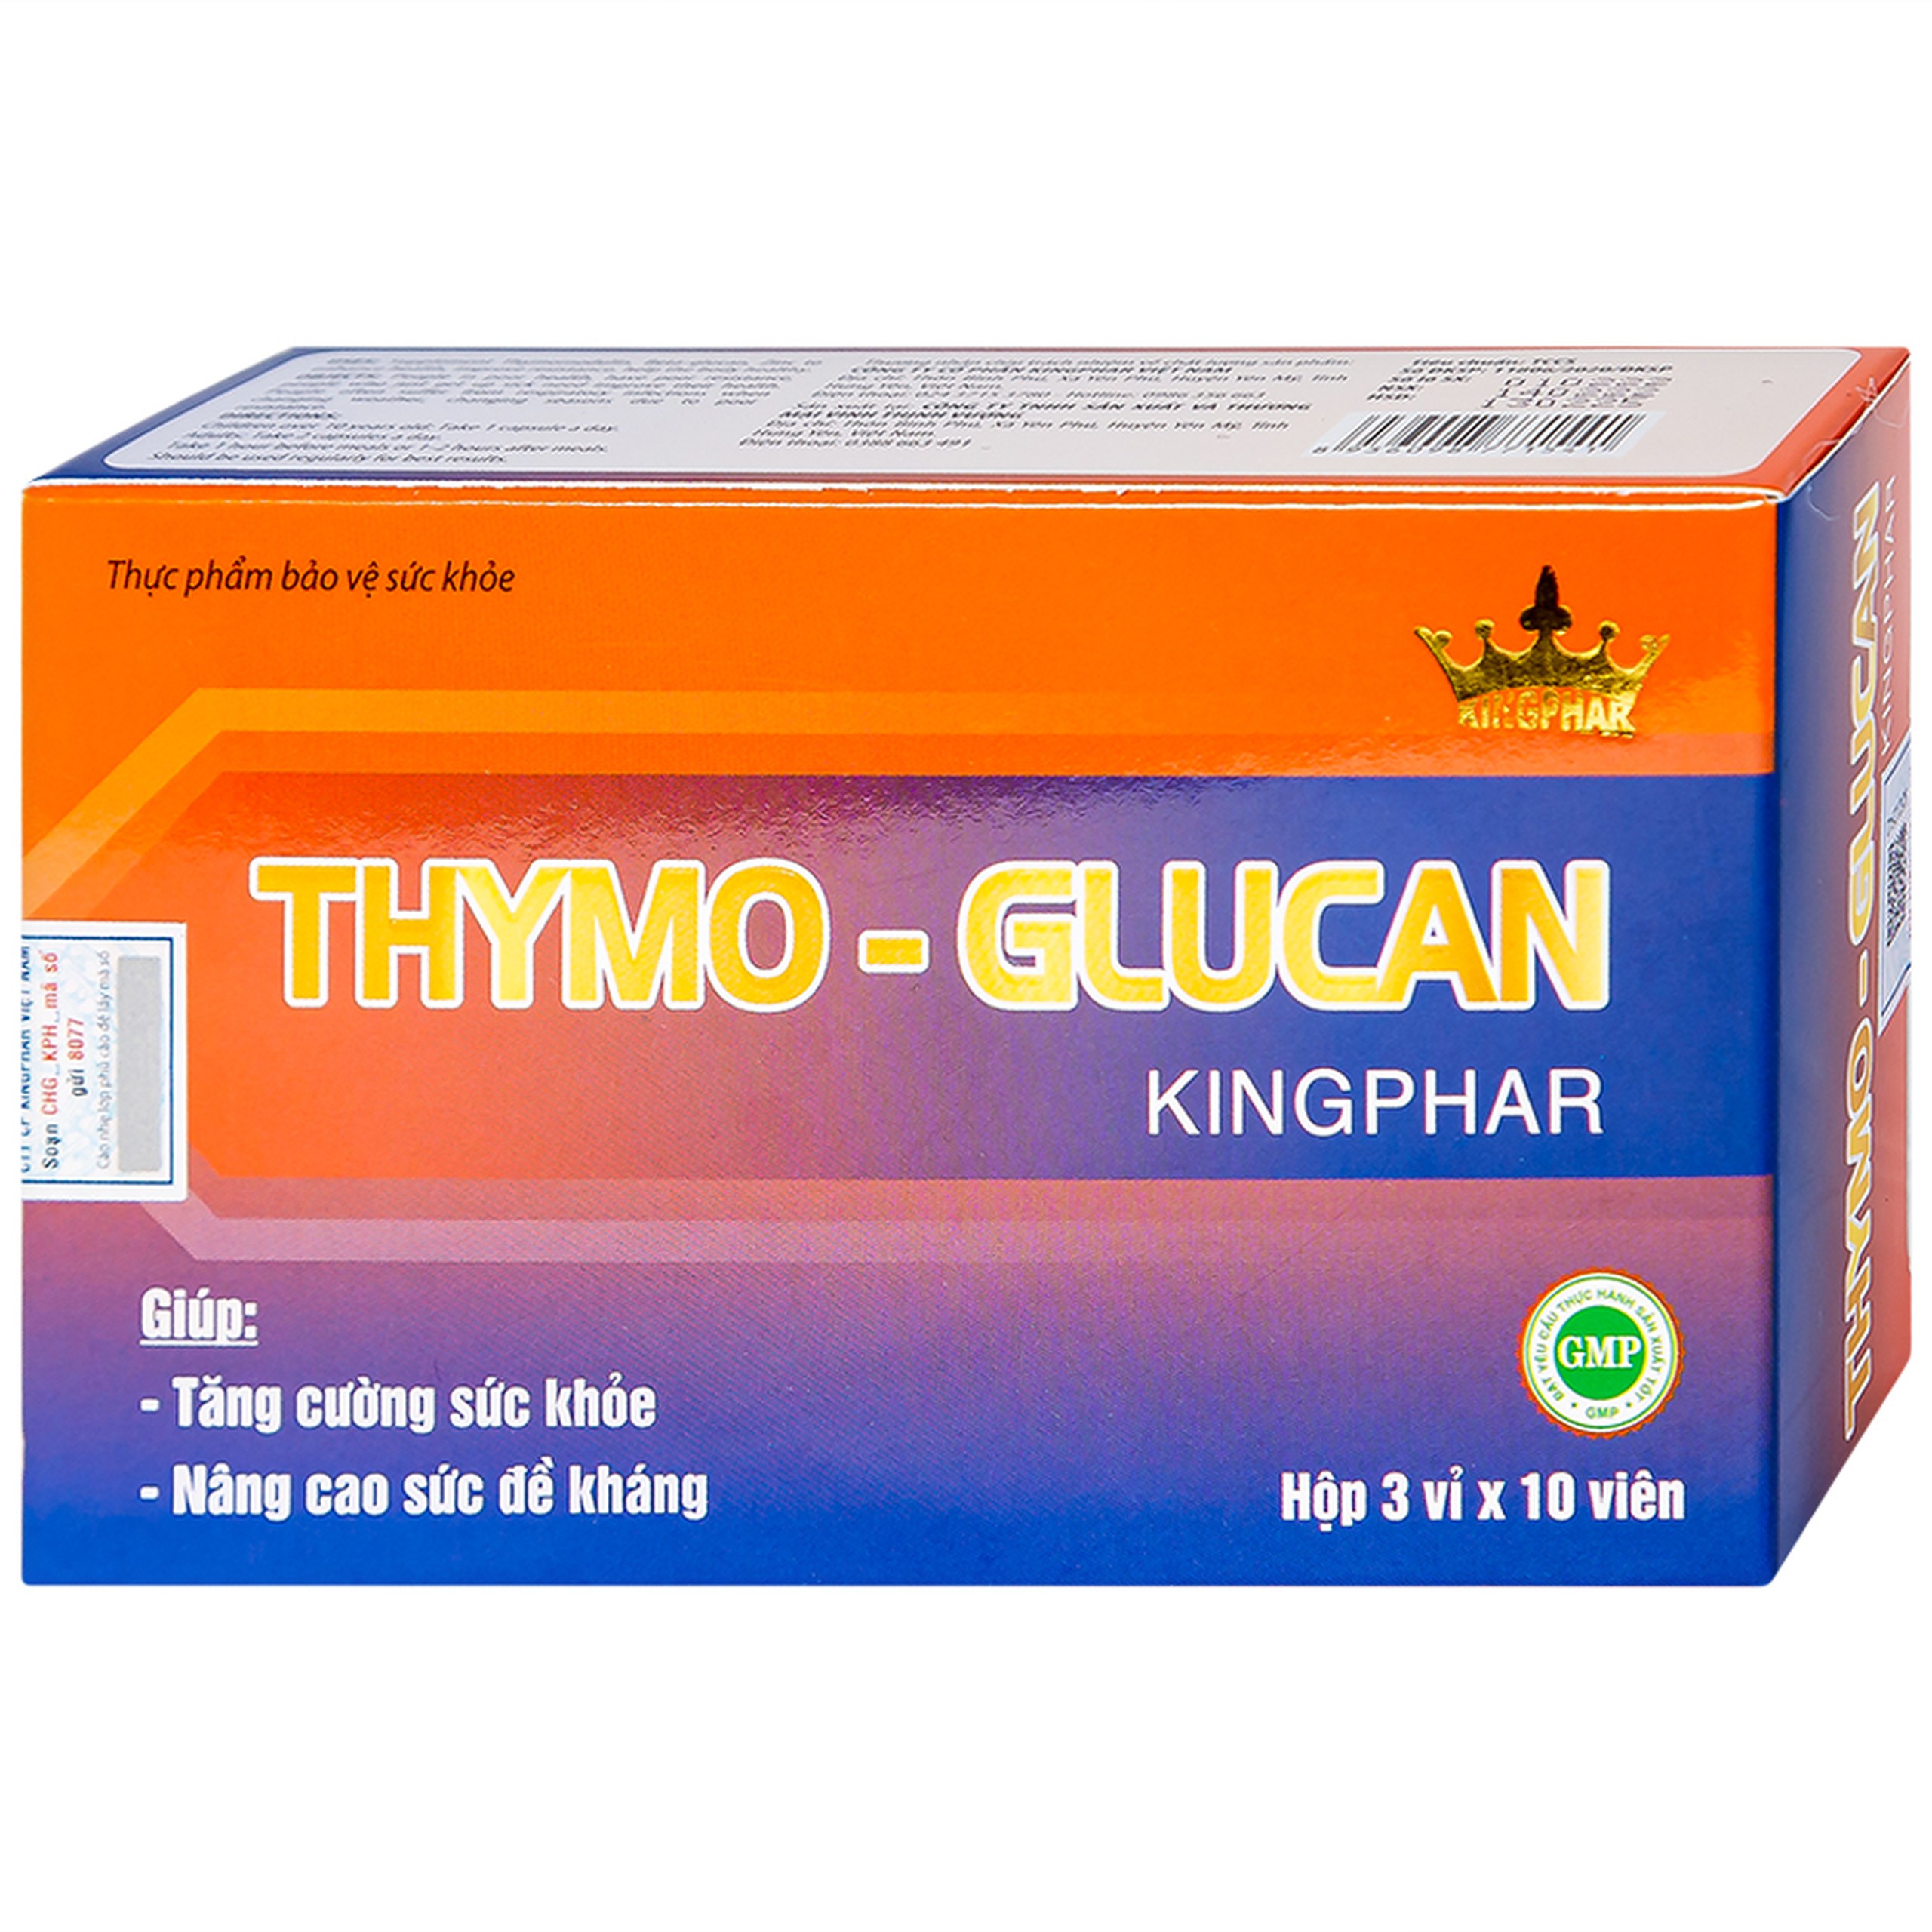 Viên uống Thymo-Glucan Kingphar nâng cao sức đề kháng, giúp cơ thể khỏe mạnh (3 vỉ x 10 viên) 